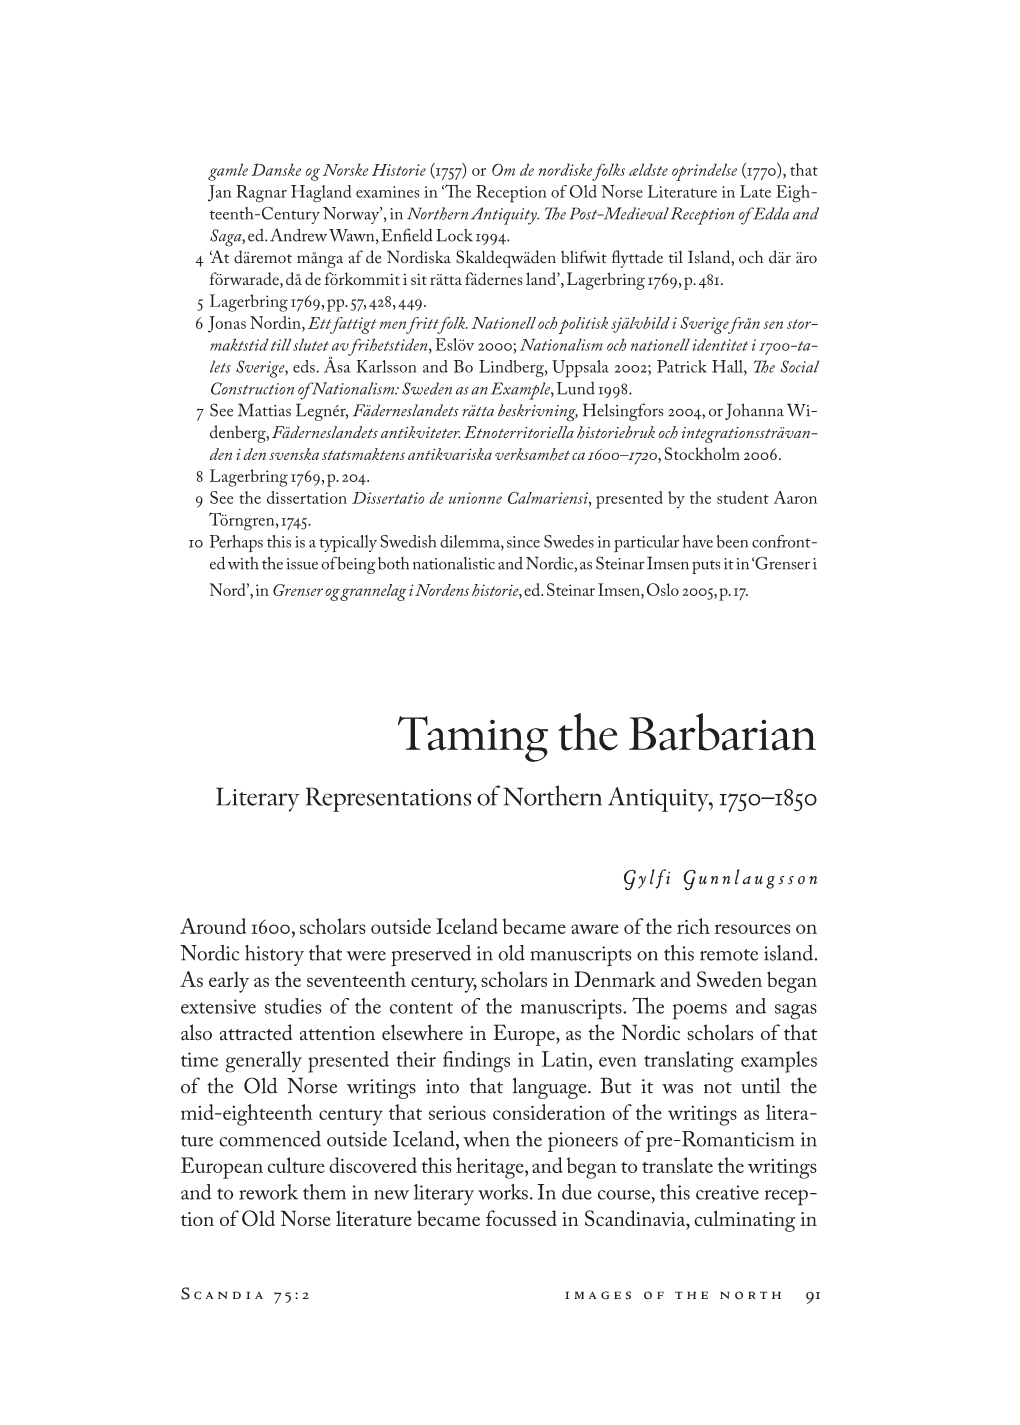 Taming the Barbarian